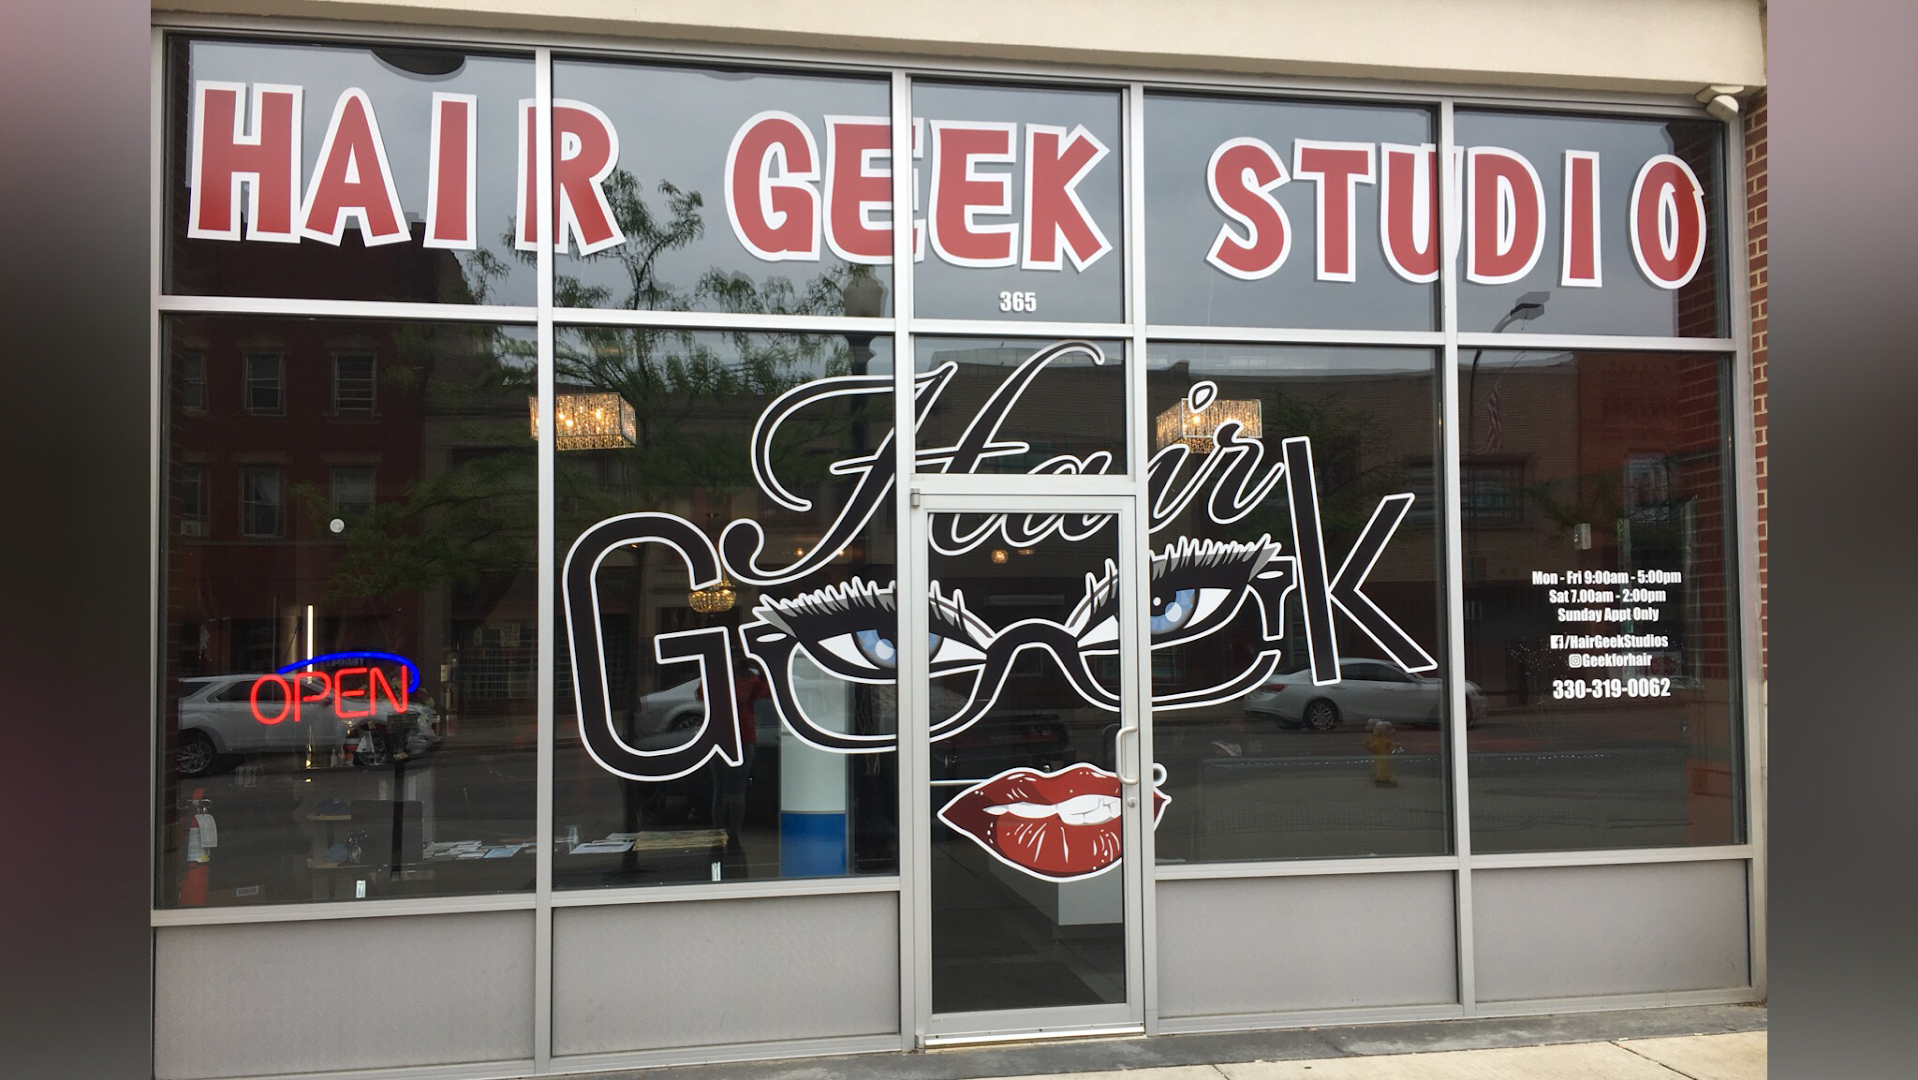 Hair Geek Studio